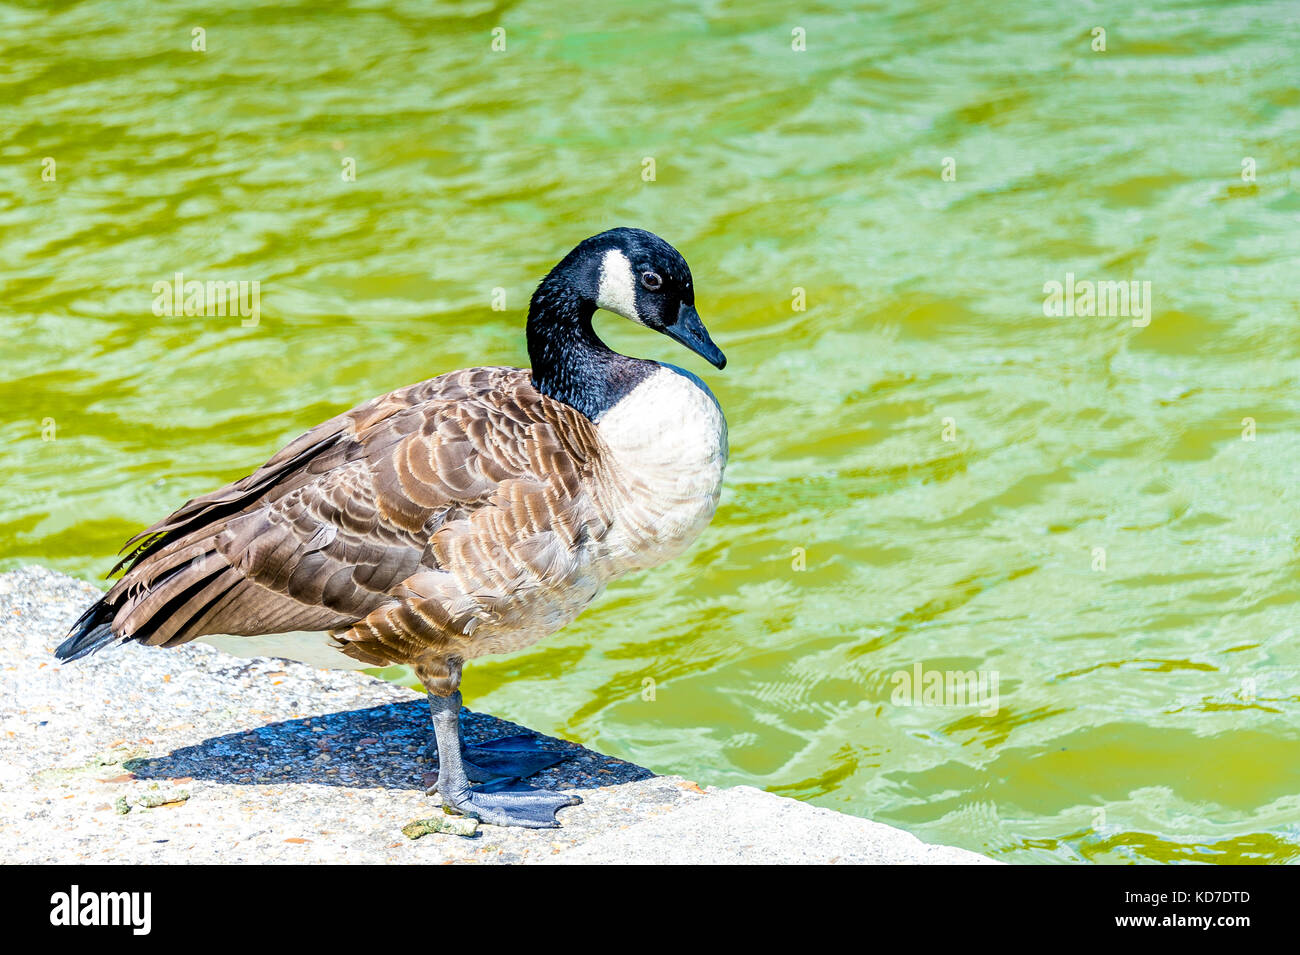 A Canada Goose in Parc Floral de Paris located within the Bois de Stock  Photo - Alamy